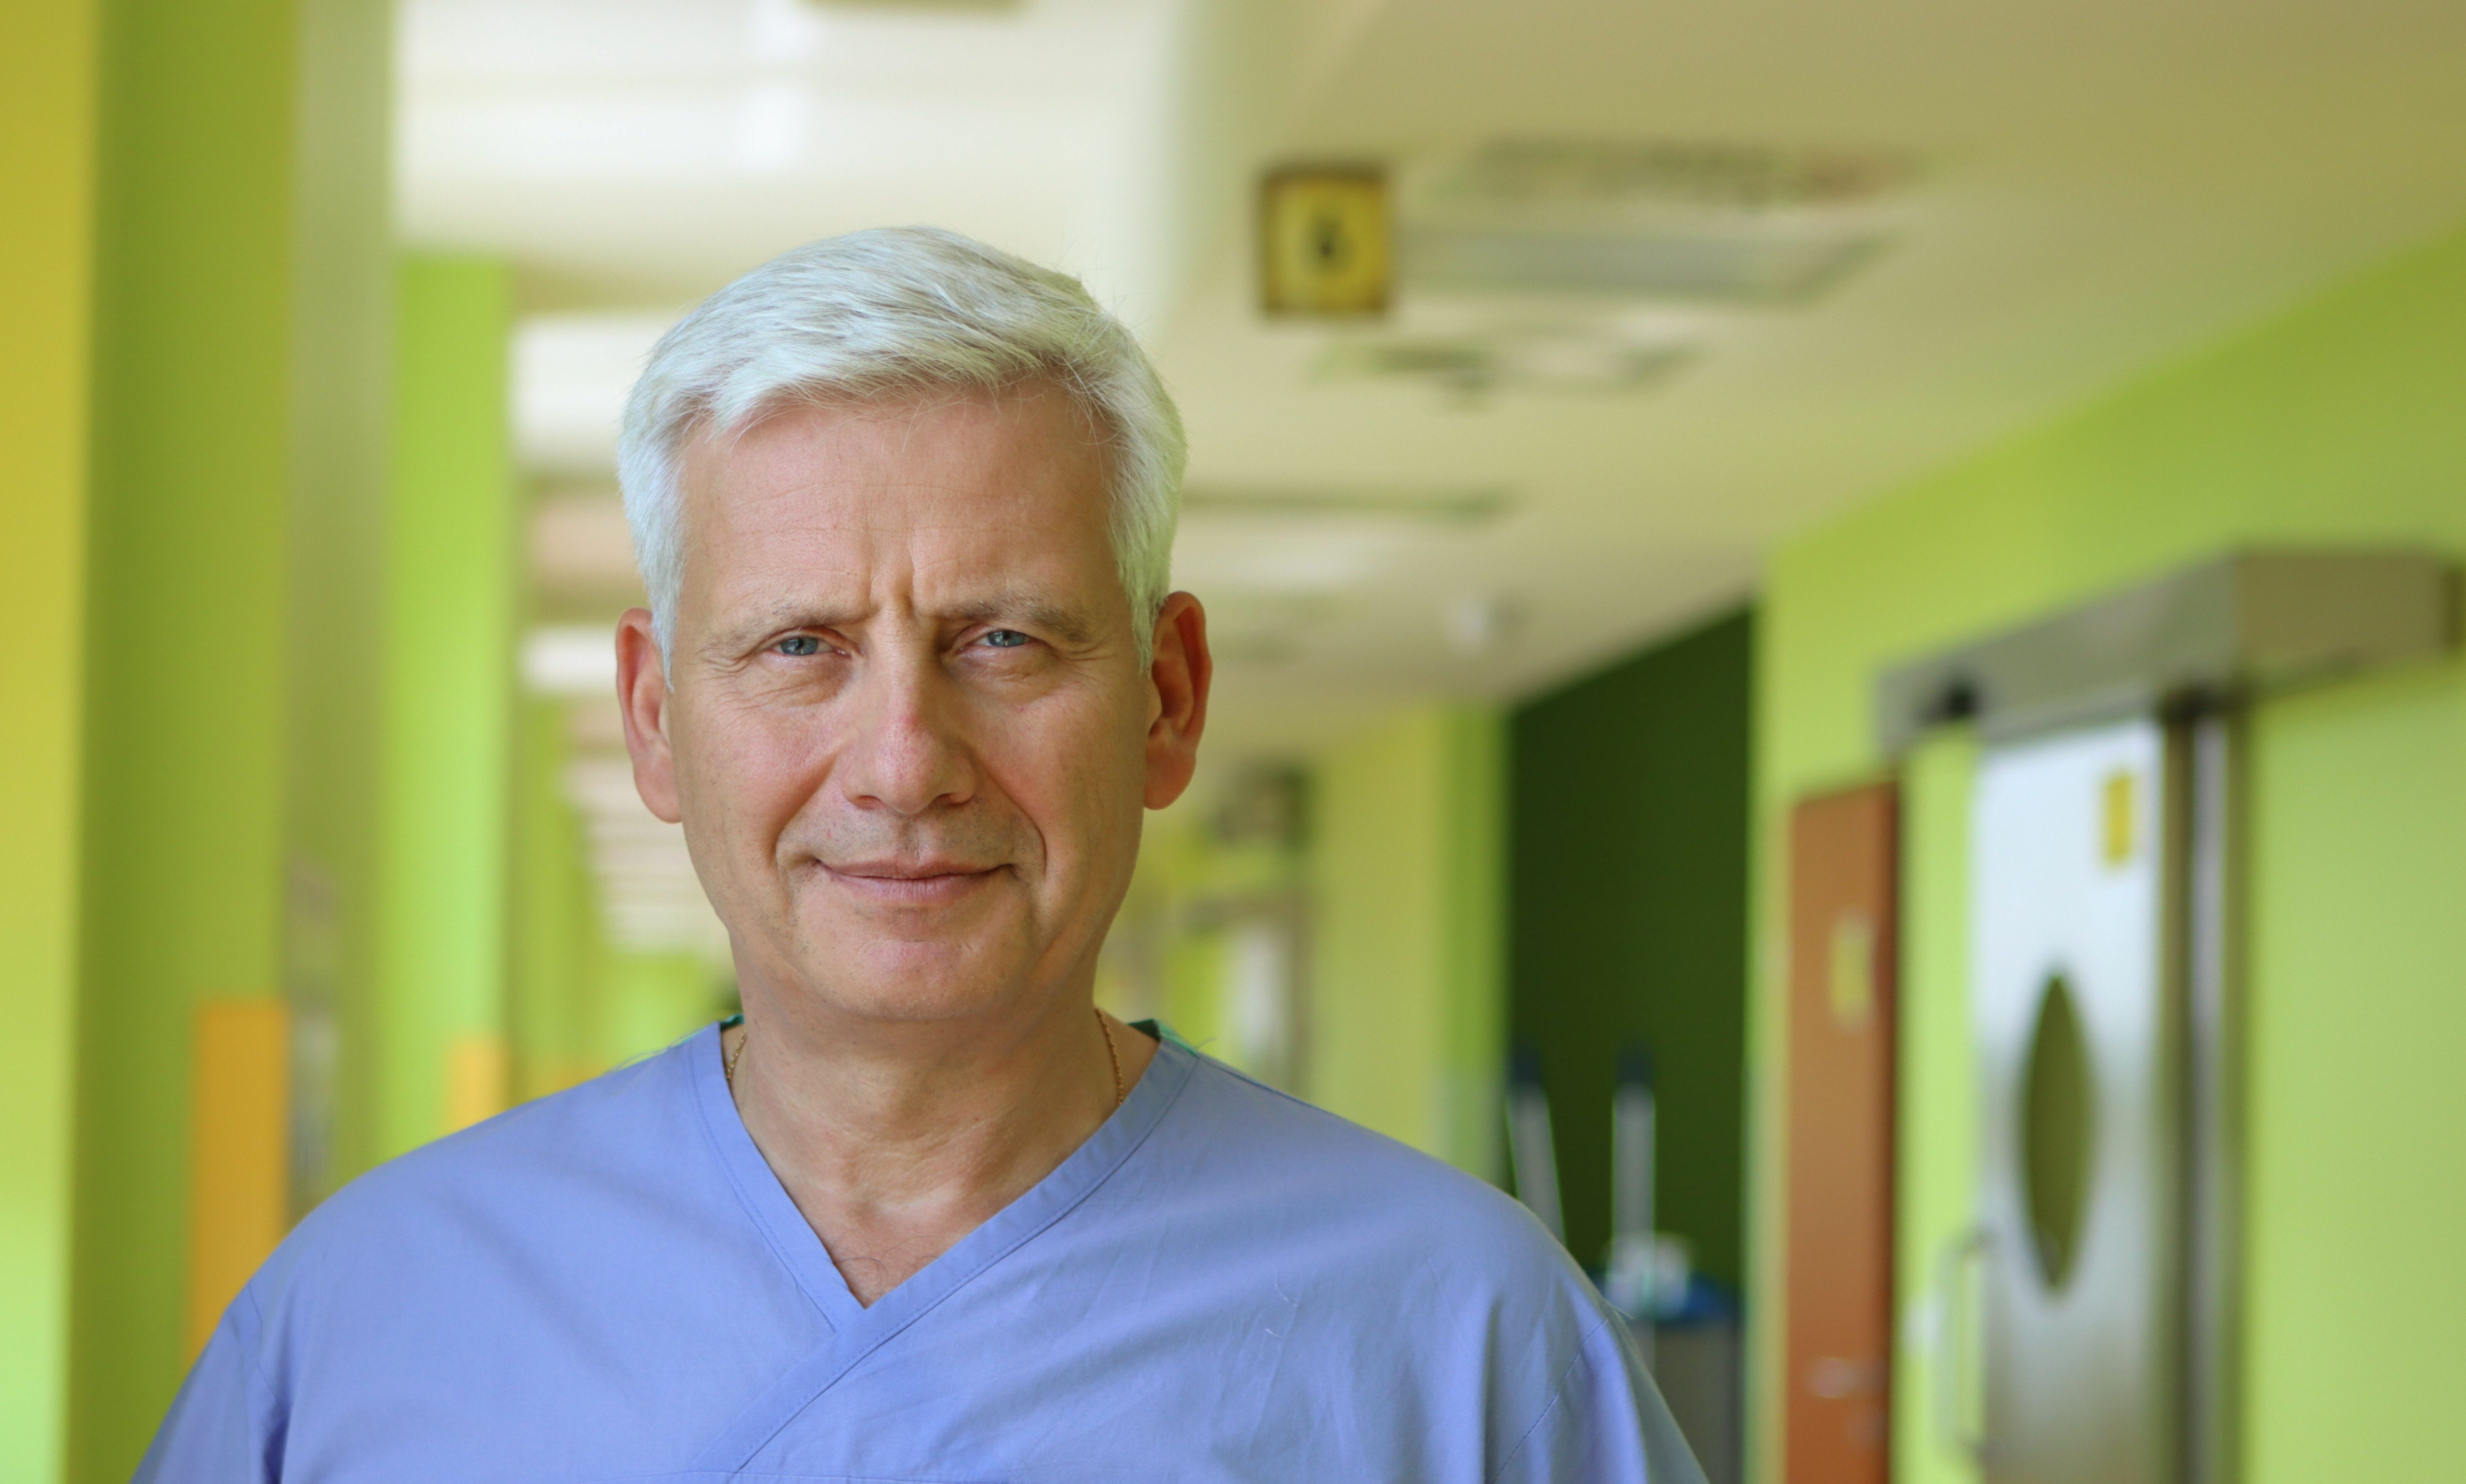 Dr Robert Klijer, ordynator oddziału urologii w Centrum Onkologii Ziemi Lubelskiej